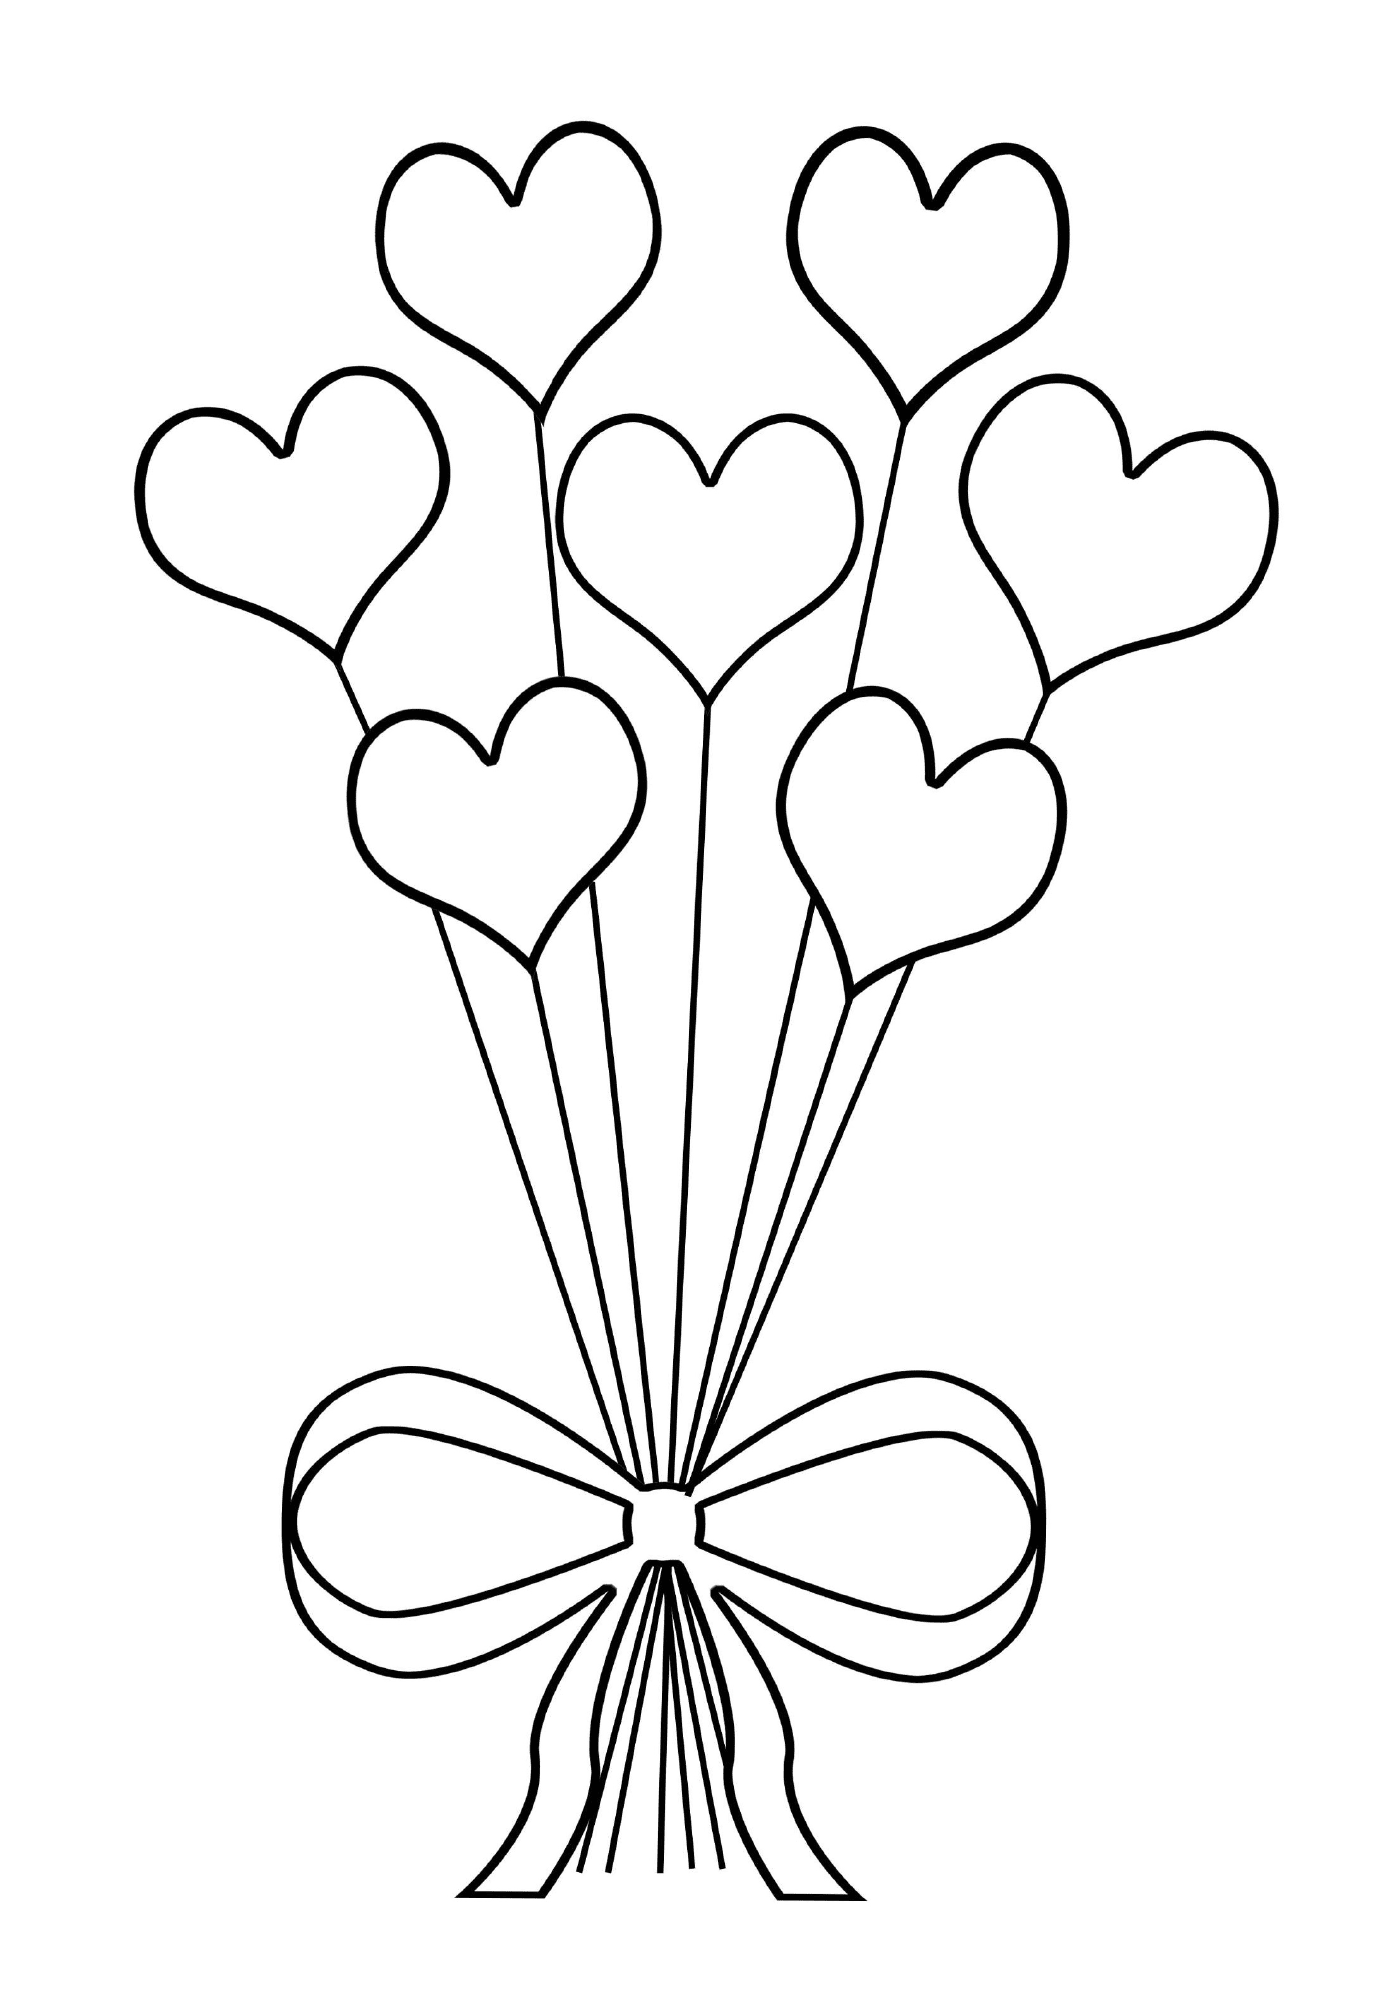  An original bouquet of heart-shaped flowers 